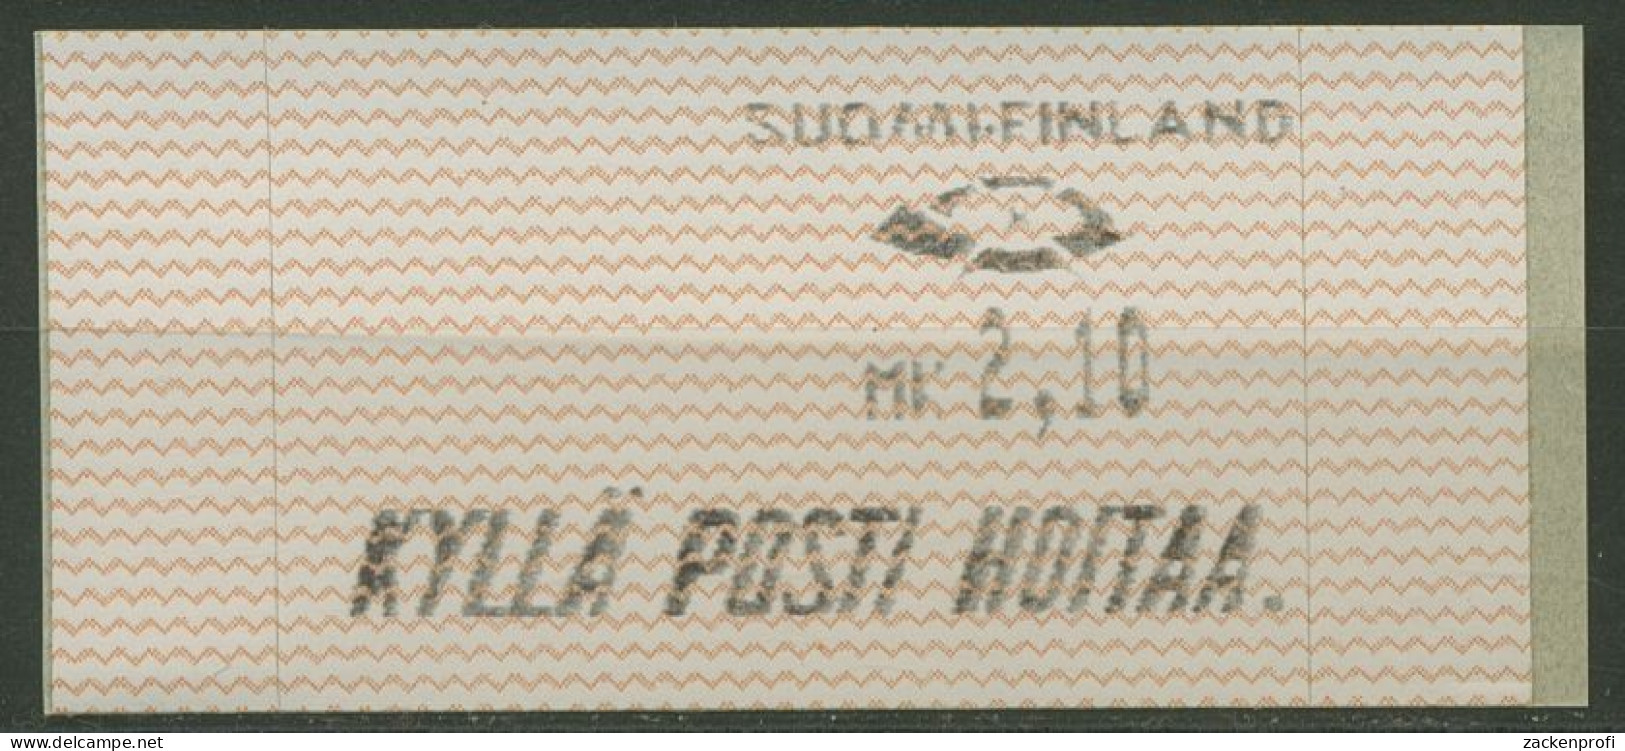 Finnland Automatenmarken 1991 Wellenlinien Einzelwert ATM 10.1 Z 1 Postfrisch - Automatenmarken [ATM]